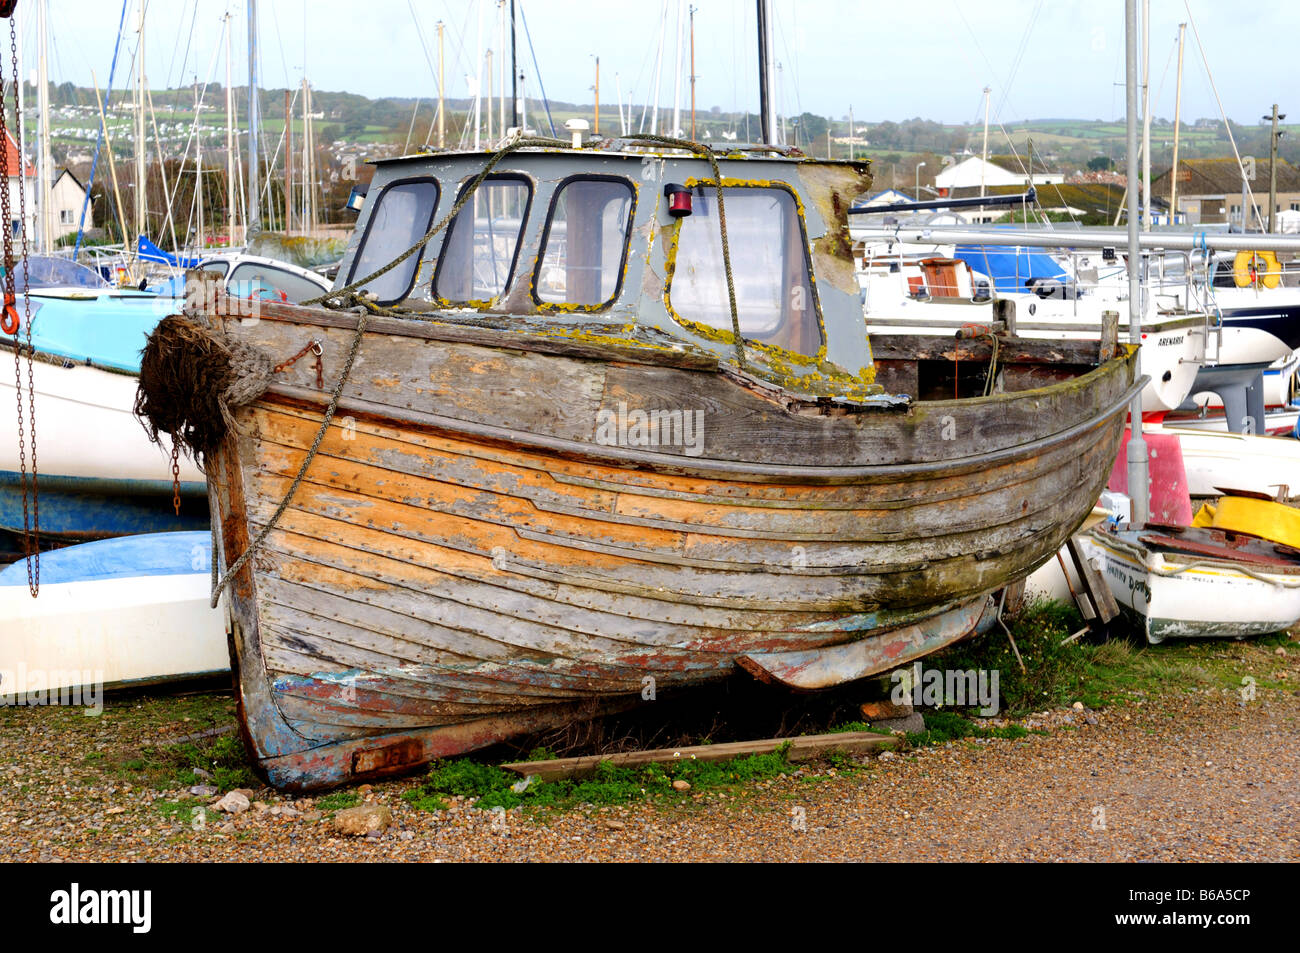 Vieux bateau de pêche au port de Devon Axmouth UK Banque D'Images